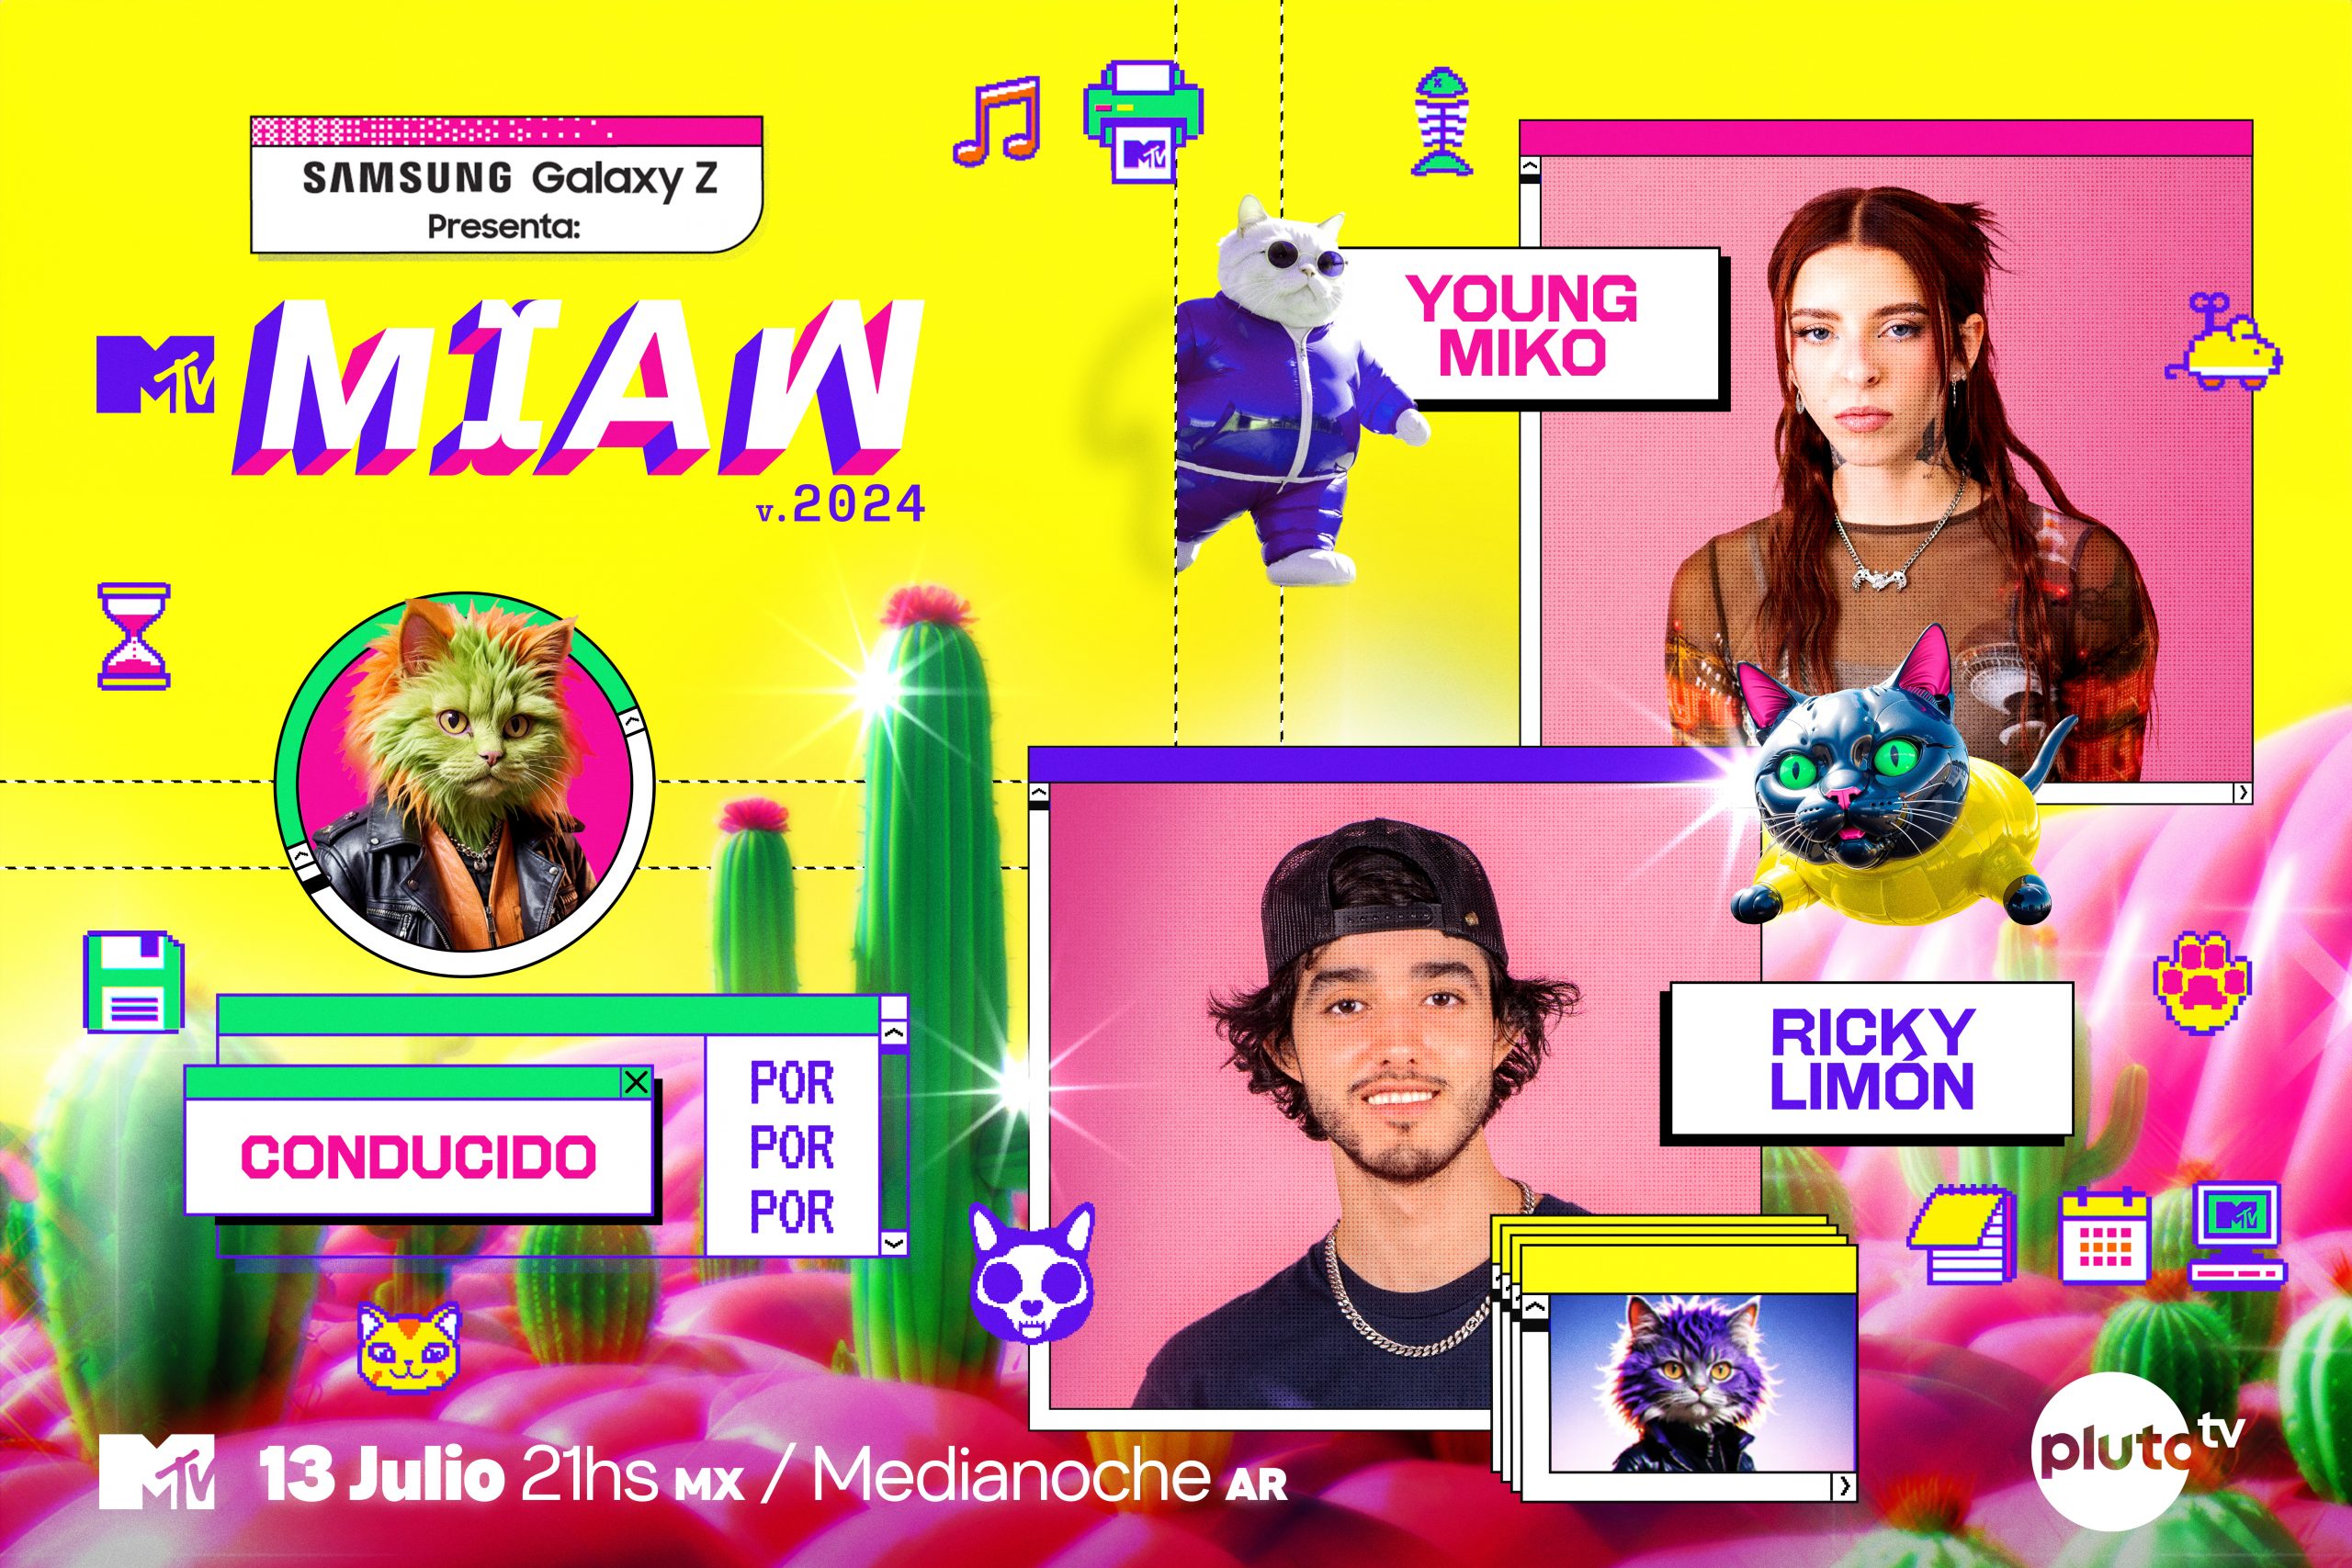 YOUNG MIKO Y RICKY LIMÓN SERÁN LOS ANFITRIONES DE LOS PREMIOS MTV MIAW 2024